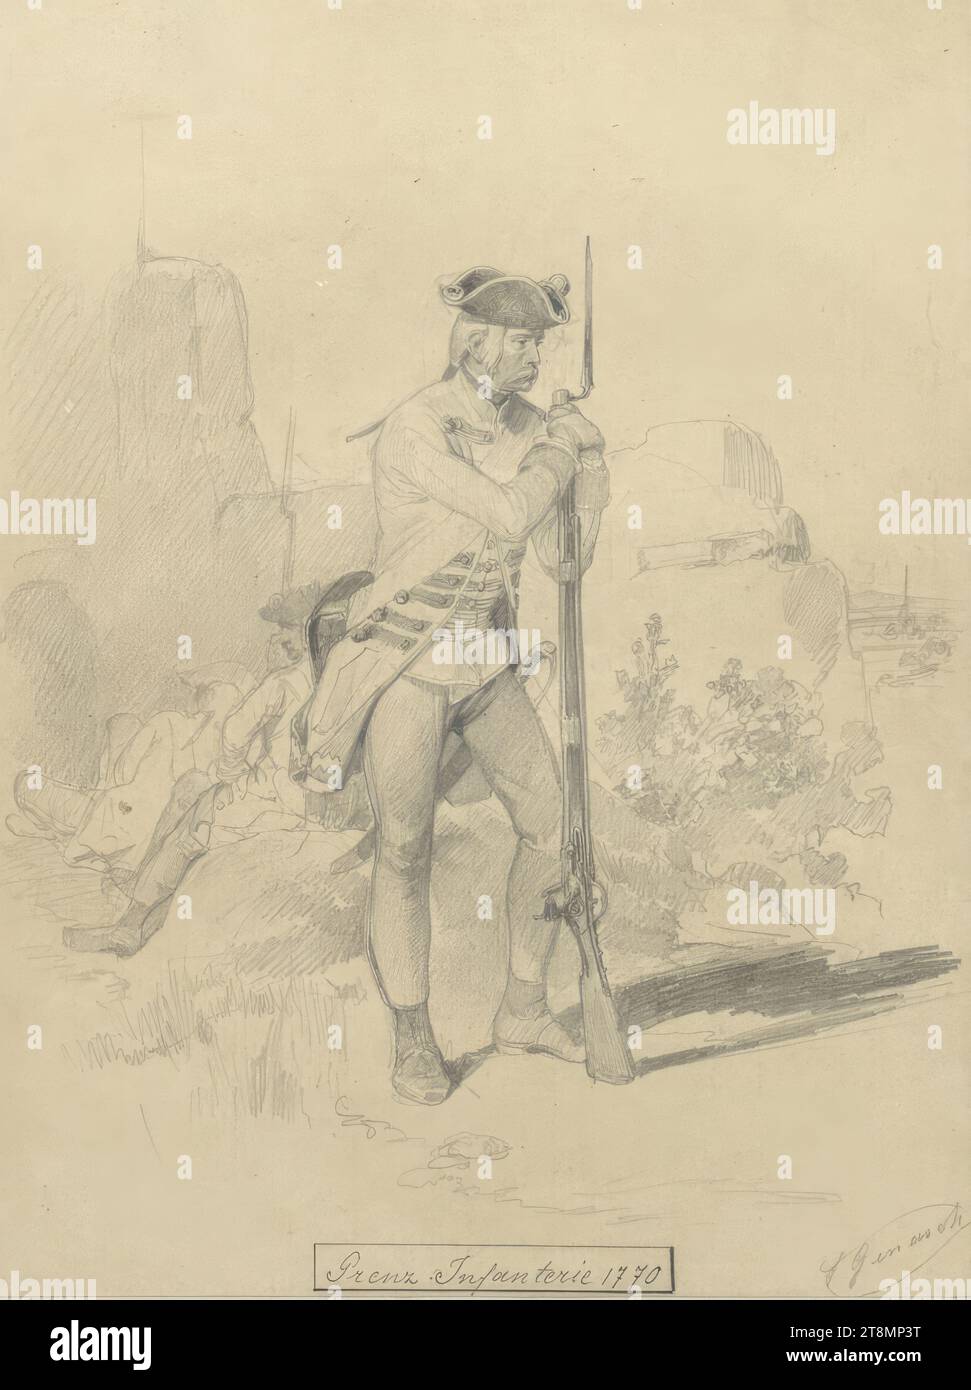 Grenzinfanterie, Franz Gerasch (Wien 1826 - 1906 Wien), 1849-1856, Zeichnung, Bleistift, weiße Höhe, braunes Papier, 22,4 x 16,9 cm, m.u. 'Border Infantry 1770 Stockfoto